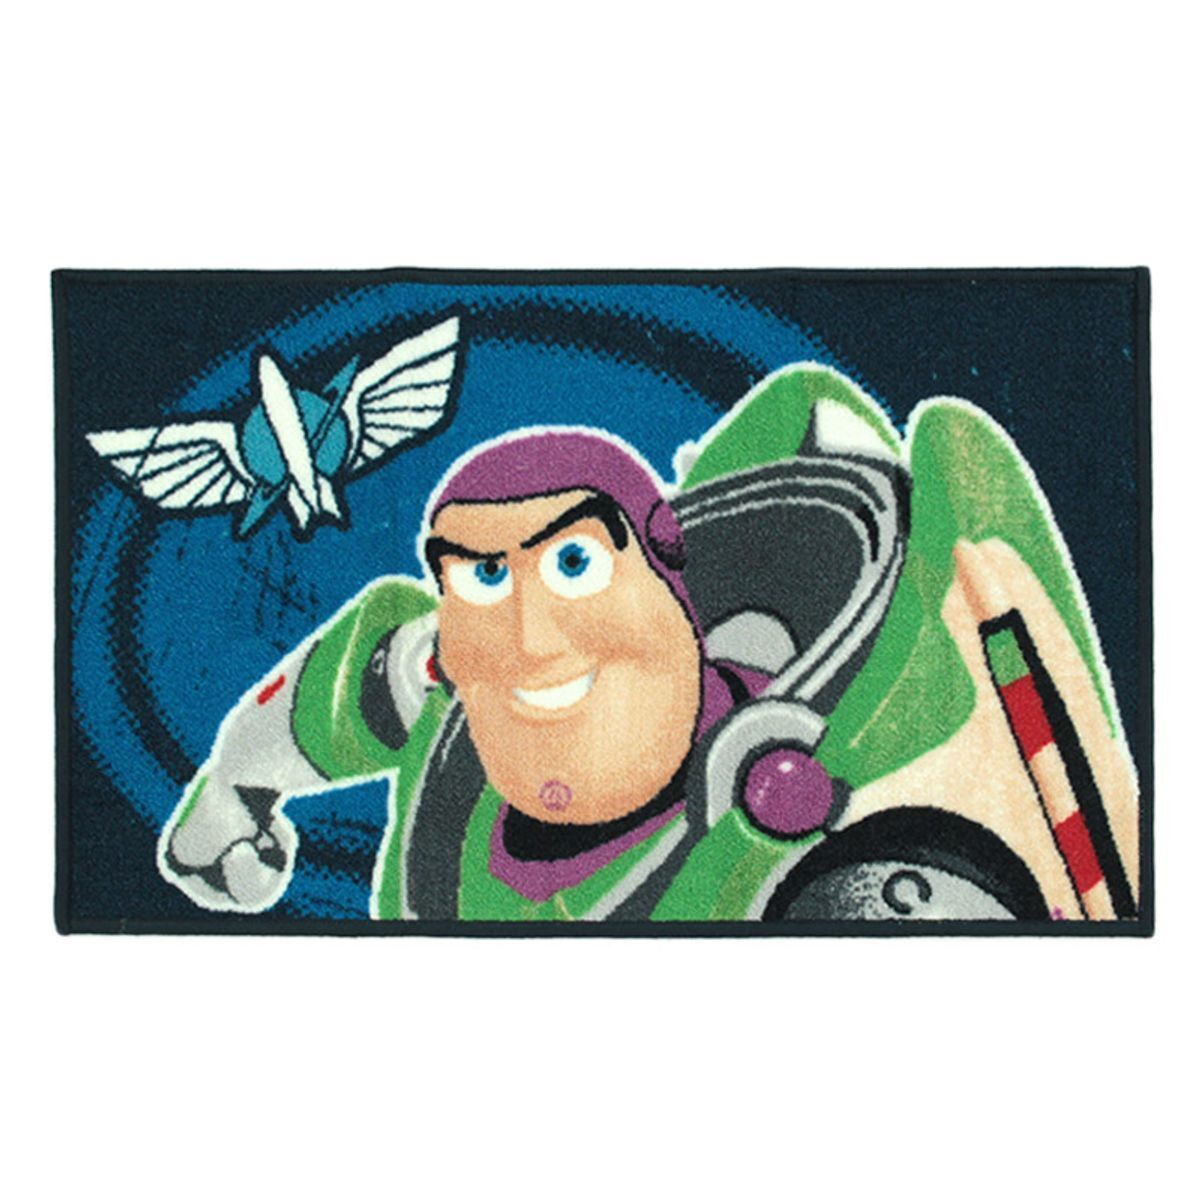 DSN-2559 Tapis de jeu antidérapant pour enfants motif dessin animé Disney  Toy Story Buzz l'éclair pour salon Taille:120x180cm